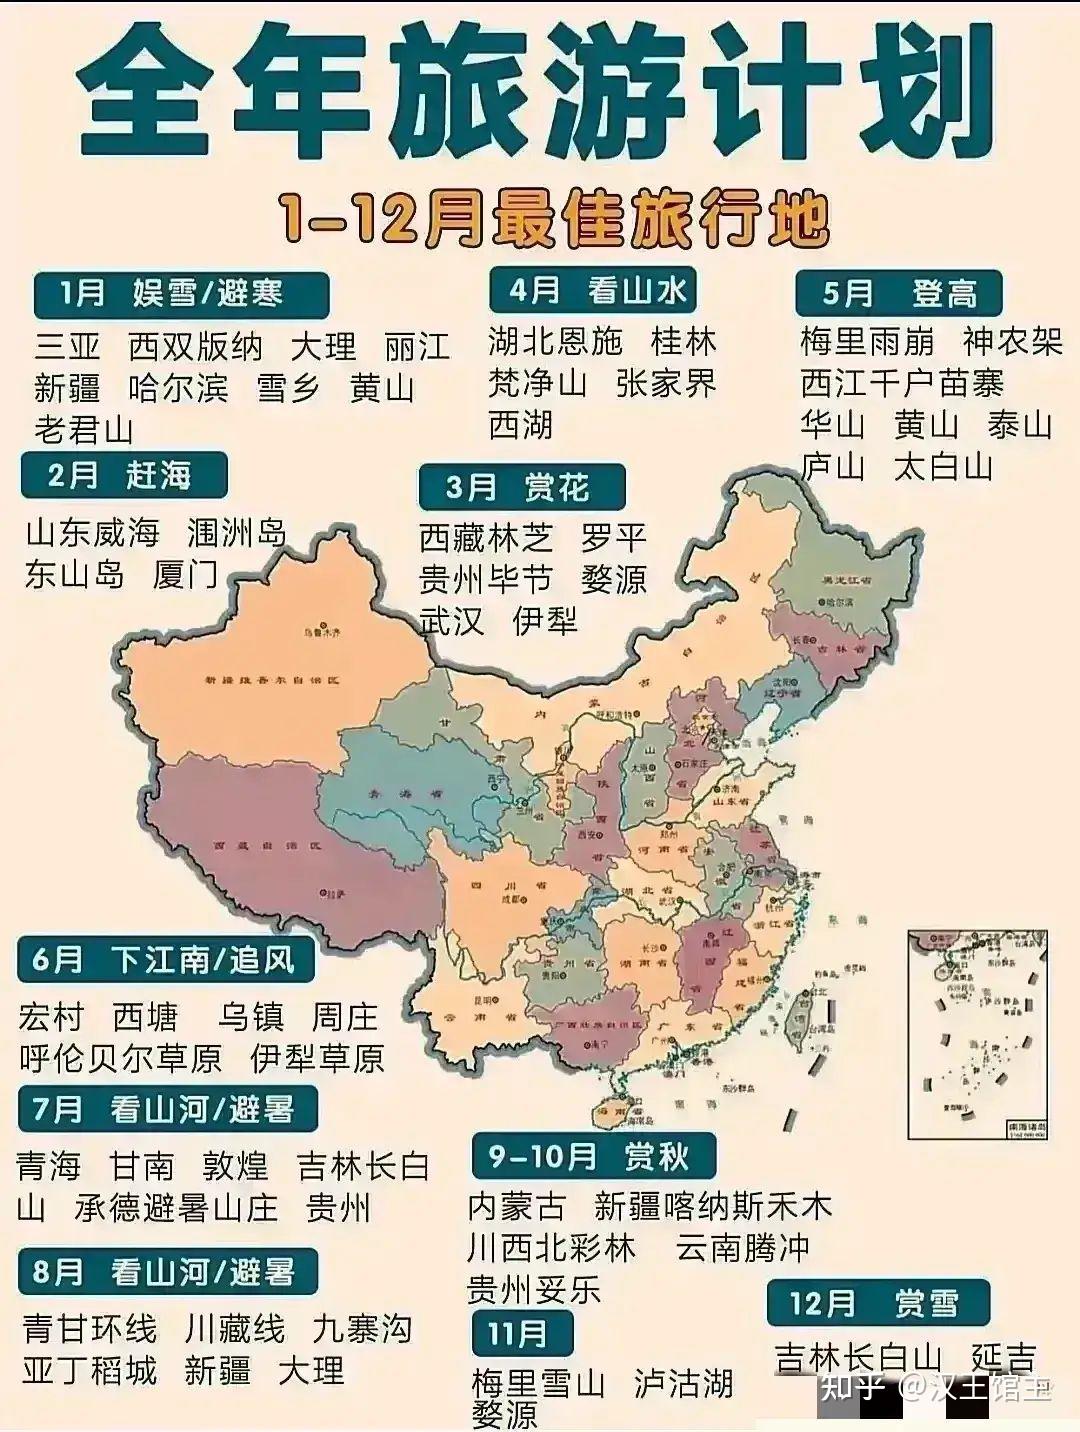 印象中国56世界遗产名录概览